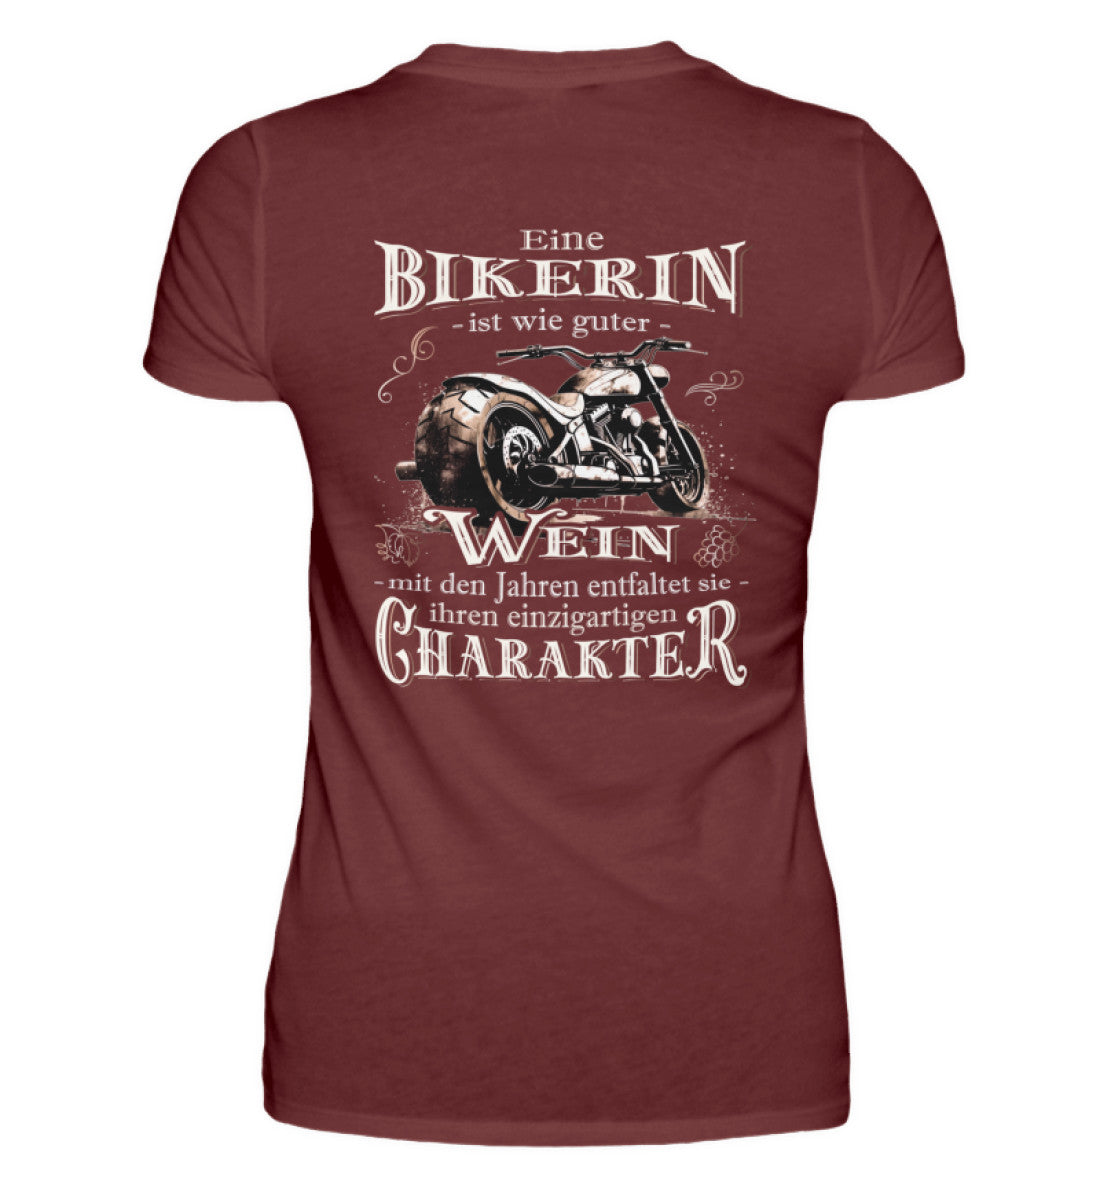 Ein Bikerin T-Shirt für Motorradfahrerinnen von Wingbikers mit dem Aufdruck, Eine Bikerin ist wie guter Wein - mit den Jahren entfaltet sie ihren einzigartigen Charakter - mit Back Print, in weinrot.